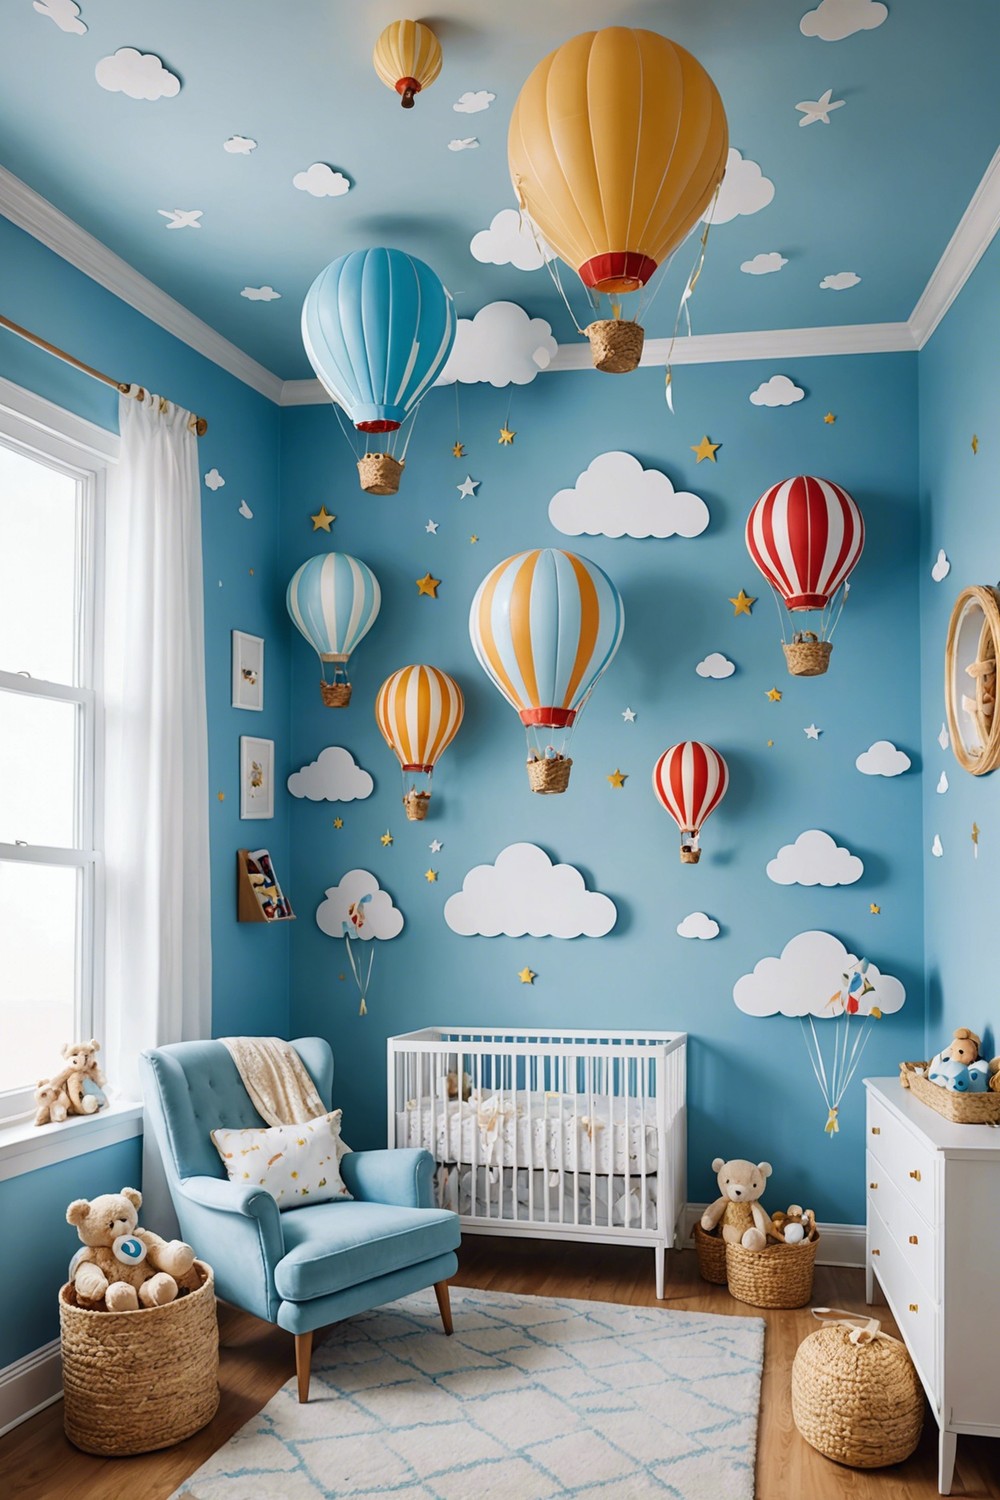 Whimsical Hot Air Balloon Themed Nursery